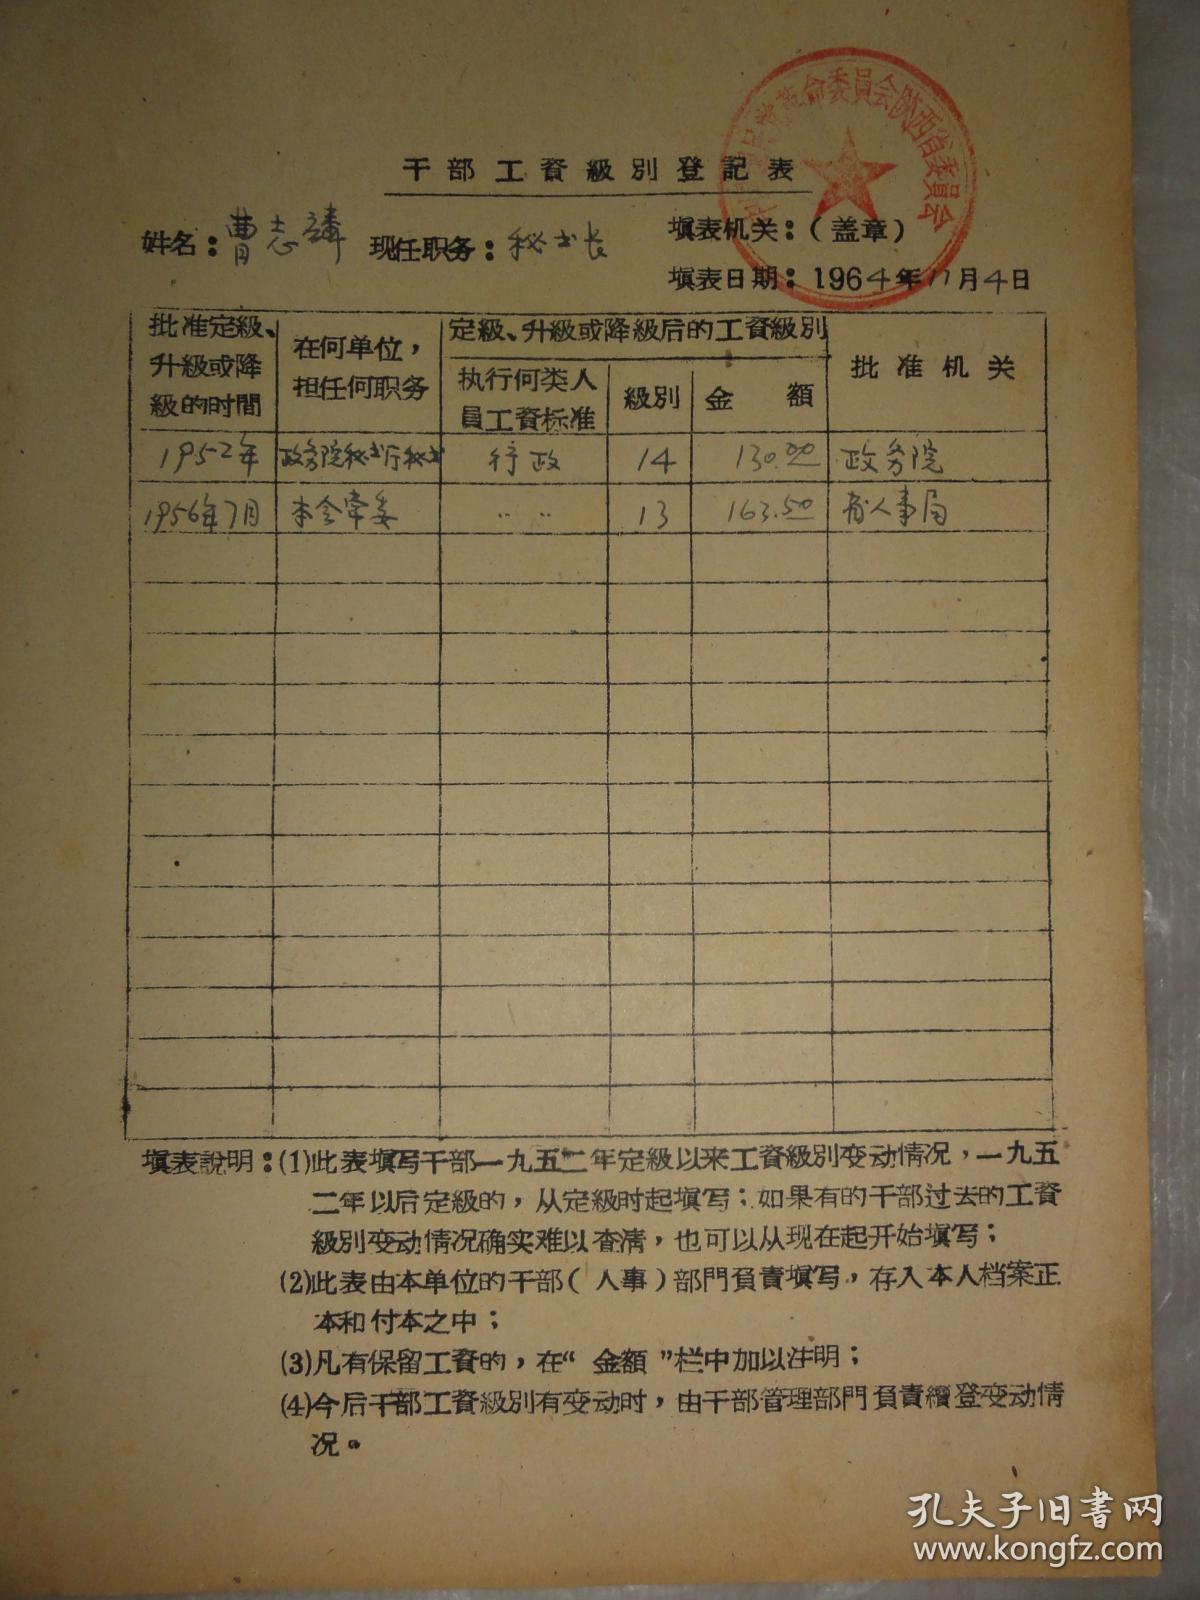 曹志麟 干部工资级别登记表(1964年)